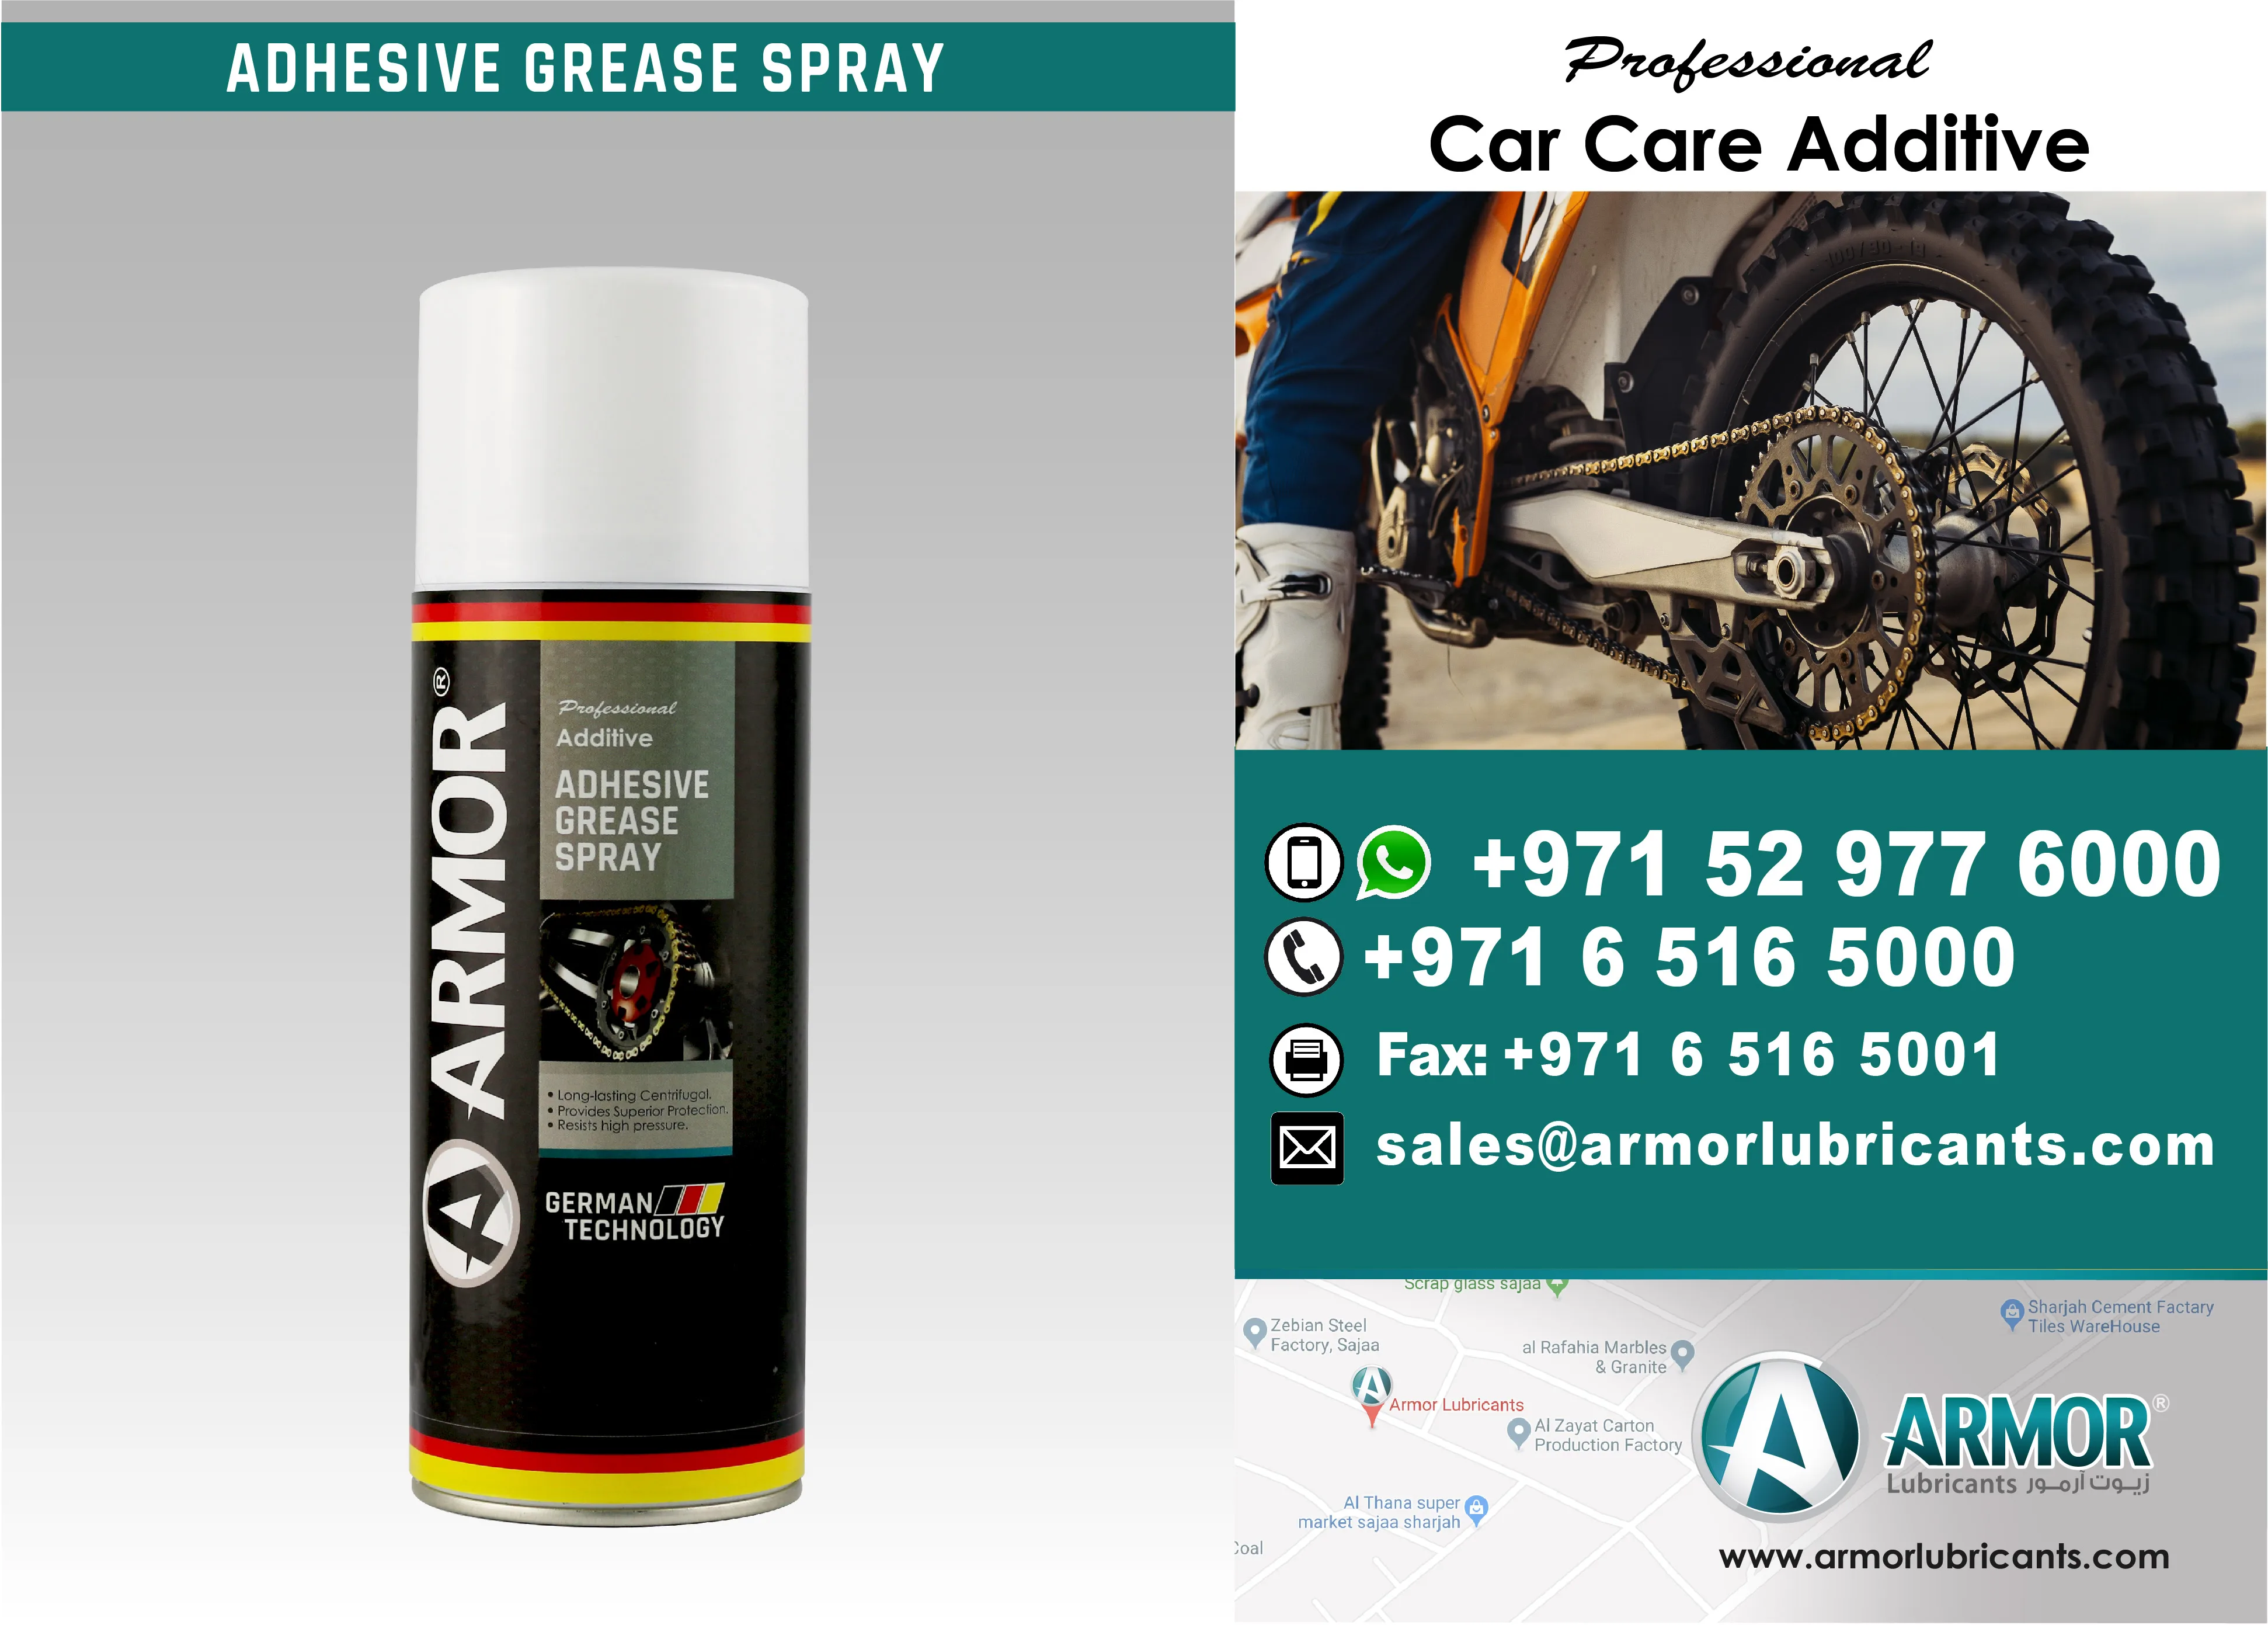 Adhesive grease Aerosol Adhesive Grease 400 ml RM RM001600400